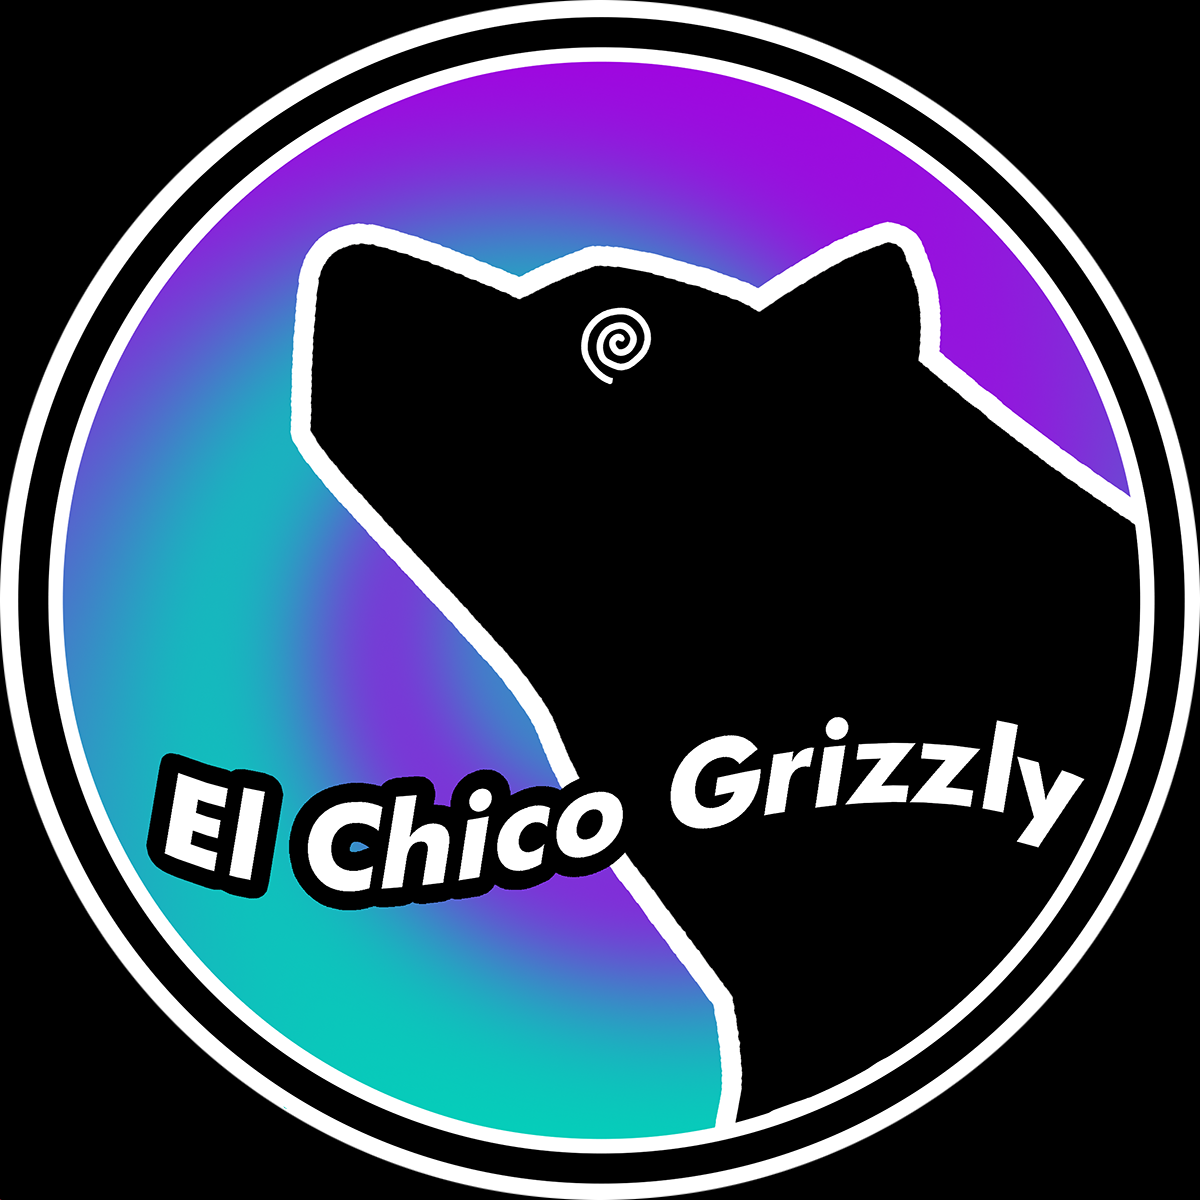 El Chico Grizzly